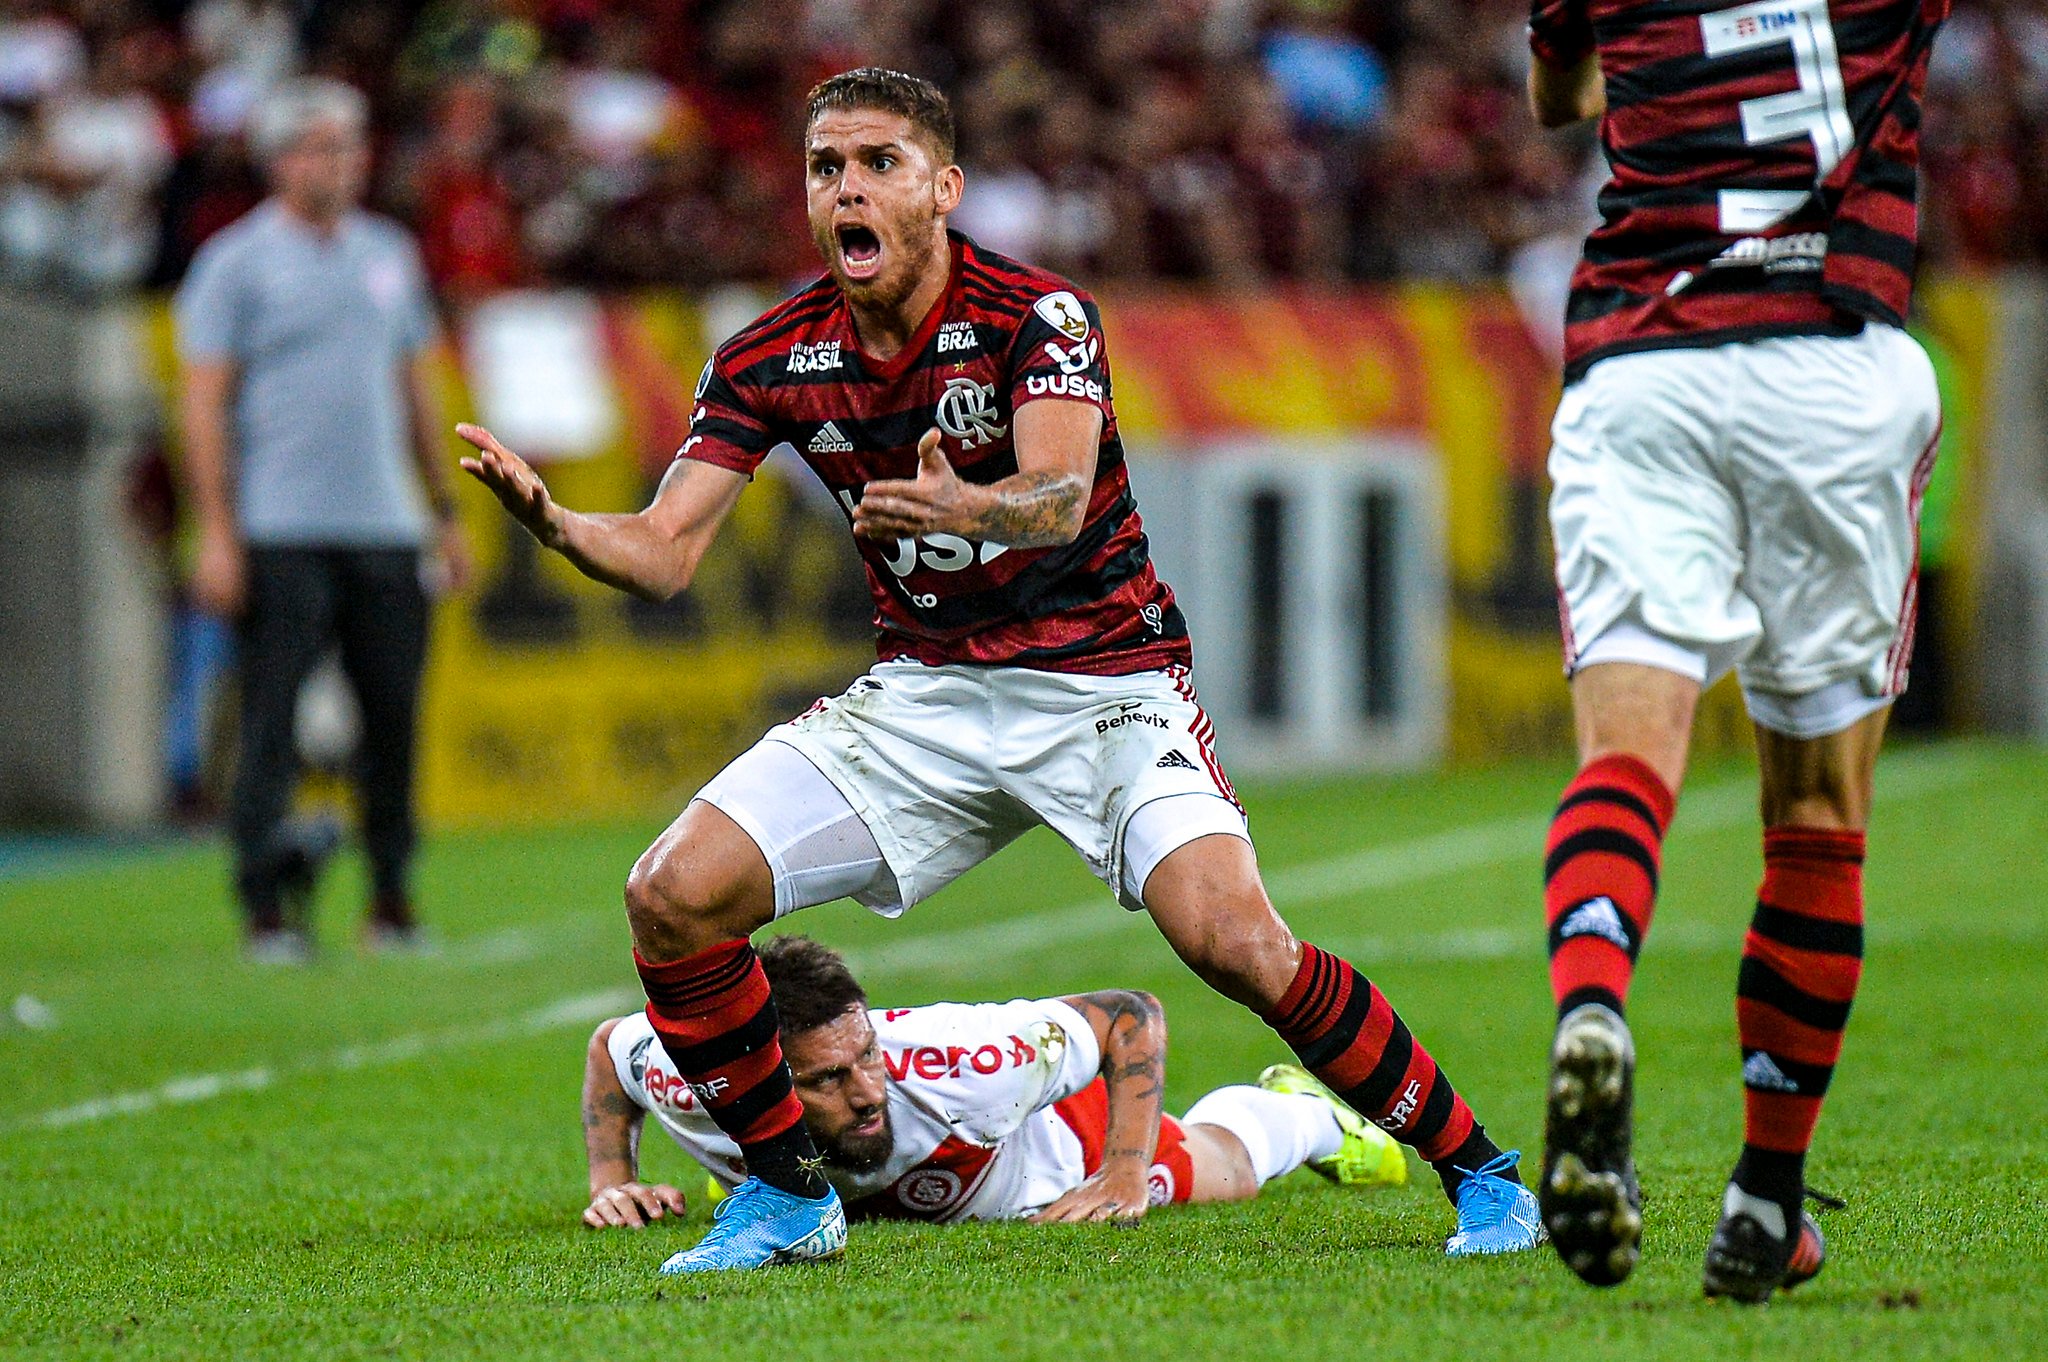 CUÉLLAR esteve na mira do Cruzeiro e chegou a projetar seu futuro na Toca da Raposa no fim de 2015. Entretanto, o Flamengo entrou em cena e conseguiu acertar sua contratação em janeiro do ano seguinte.